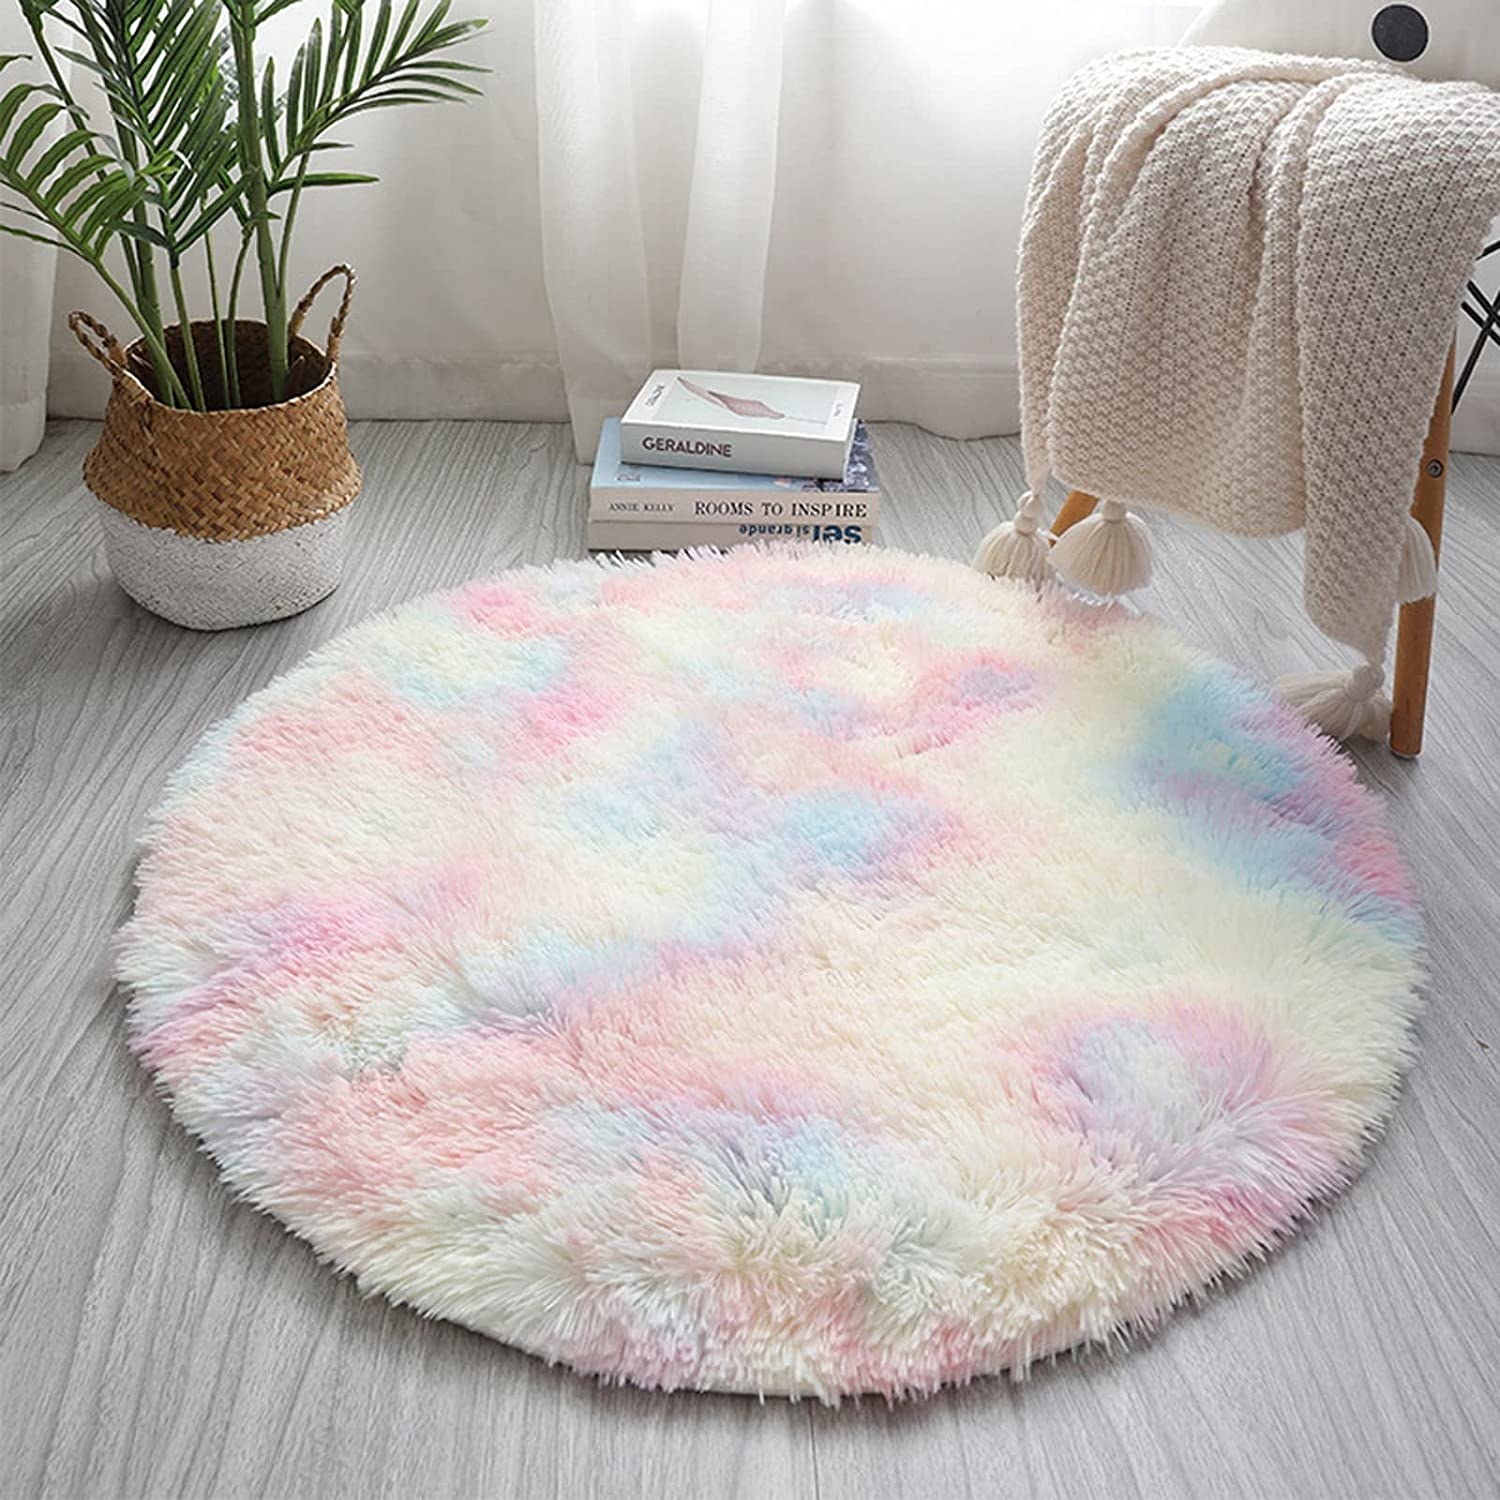 a round shaggy carpet on a floor